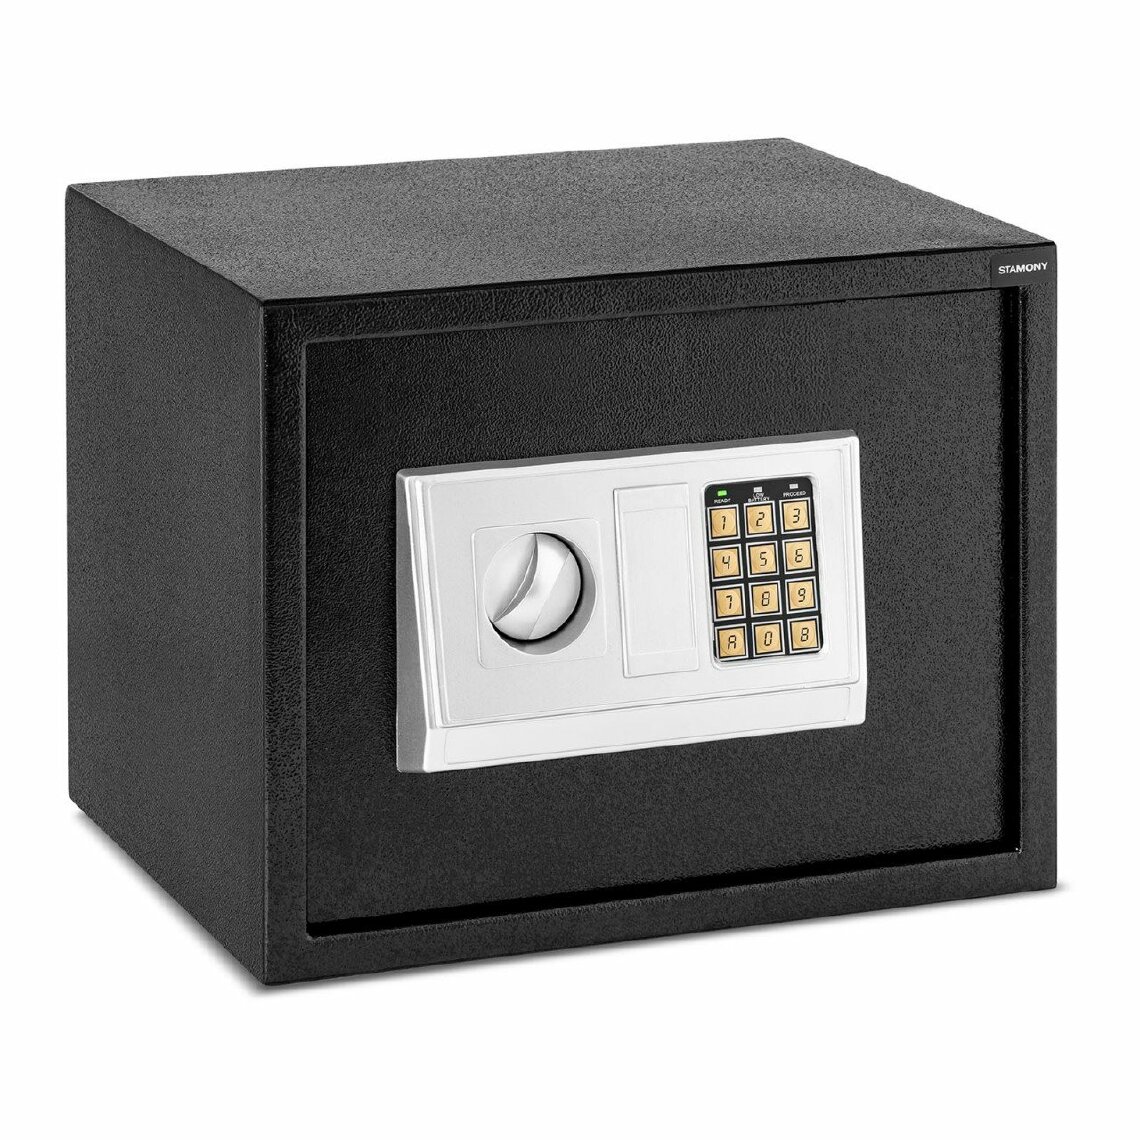 Helloshop26 - Coffre-fort électronique numérique combinaison programmable clés de secours piles incluses acier- 38 x 30 x 30 cm 14_0001081 - Coffre fort